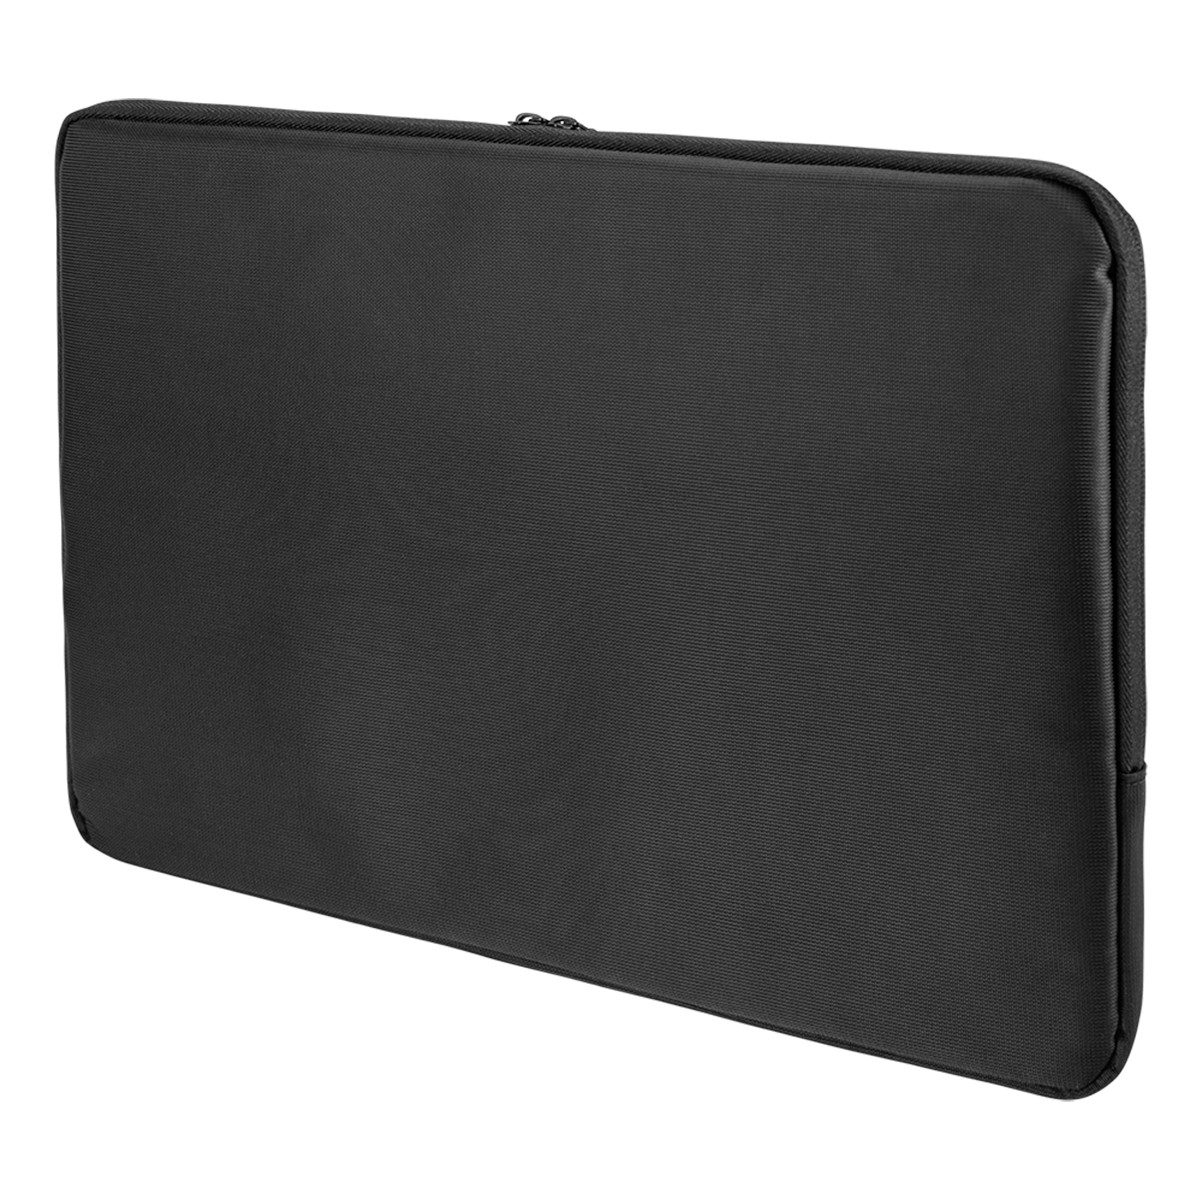 Deltaco Laptopfodral för laptops upp till 13-14 tum, svart